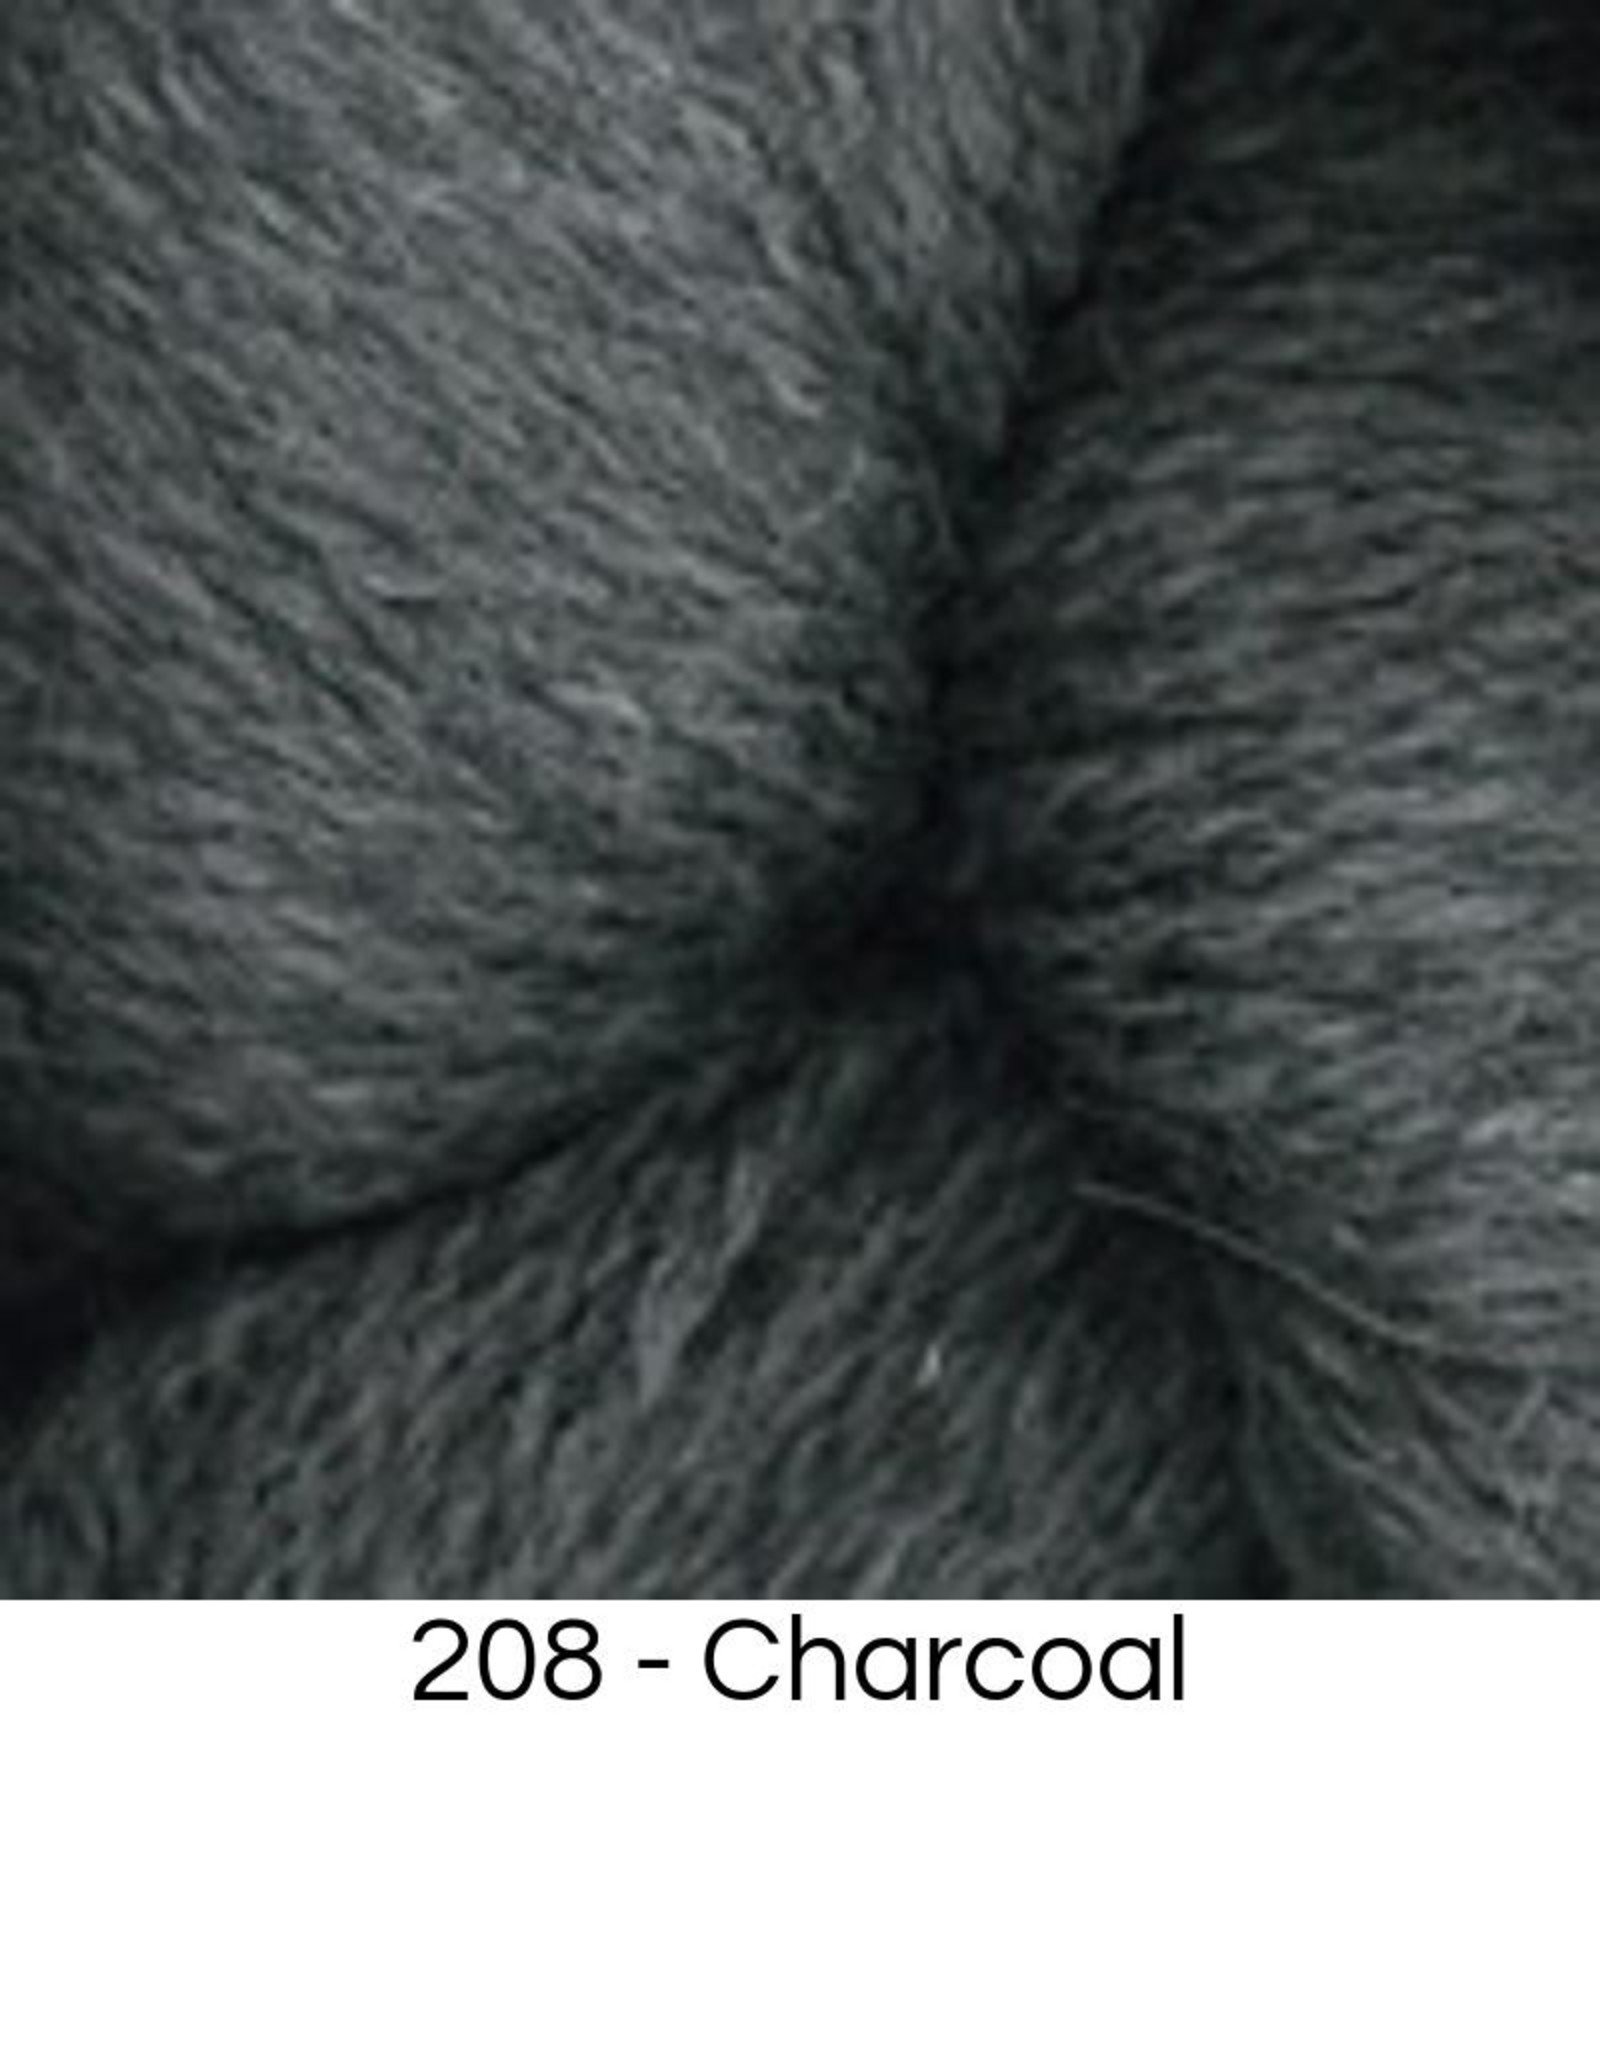 Hearthstone Yarn - Black Grey Marl (# 202)